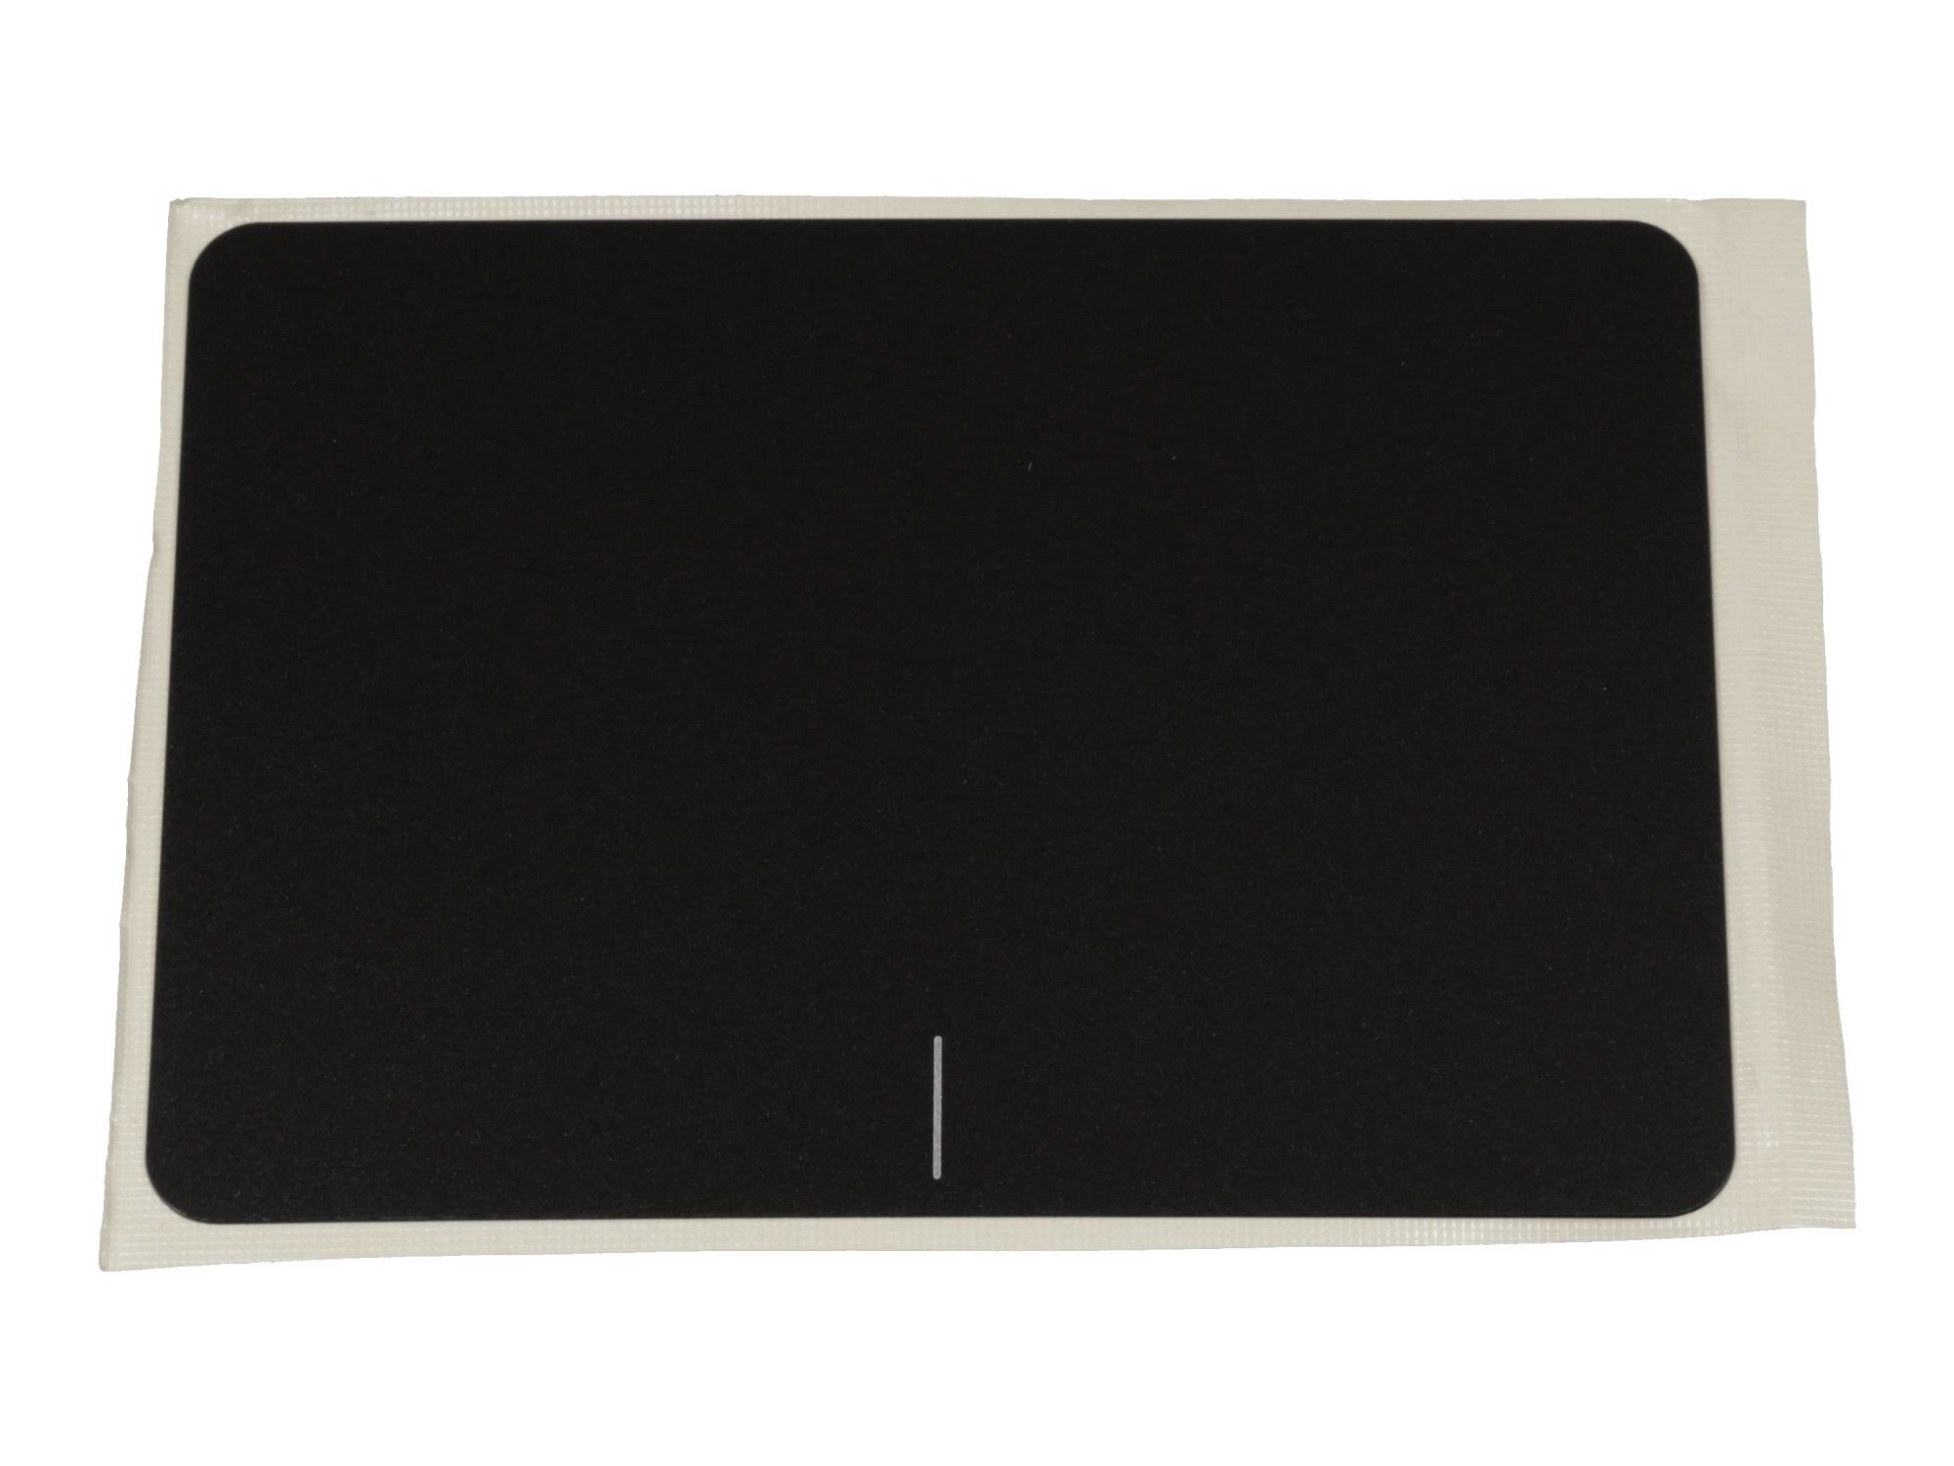 Touchpad Abdeckung schwarz für Asus F556UJ